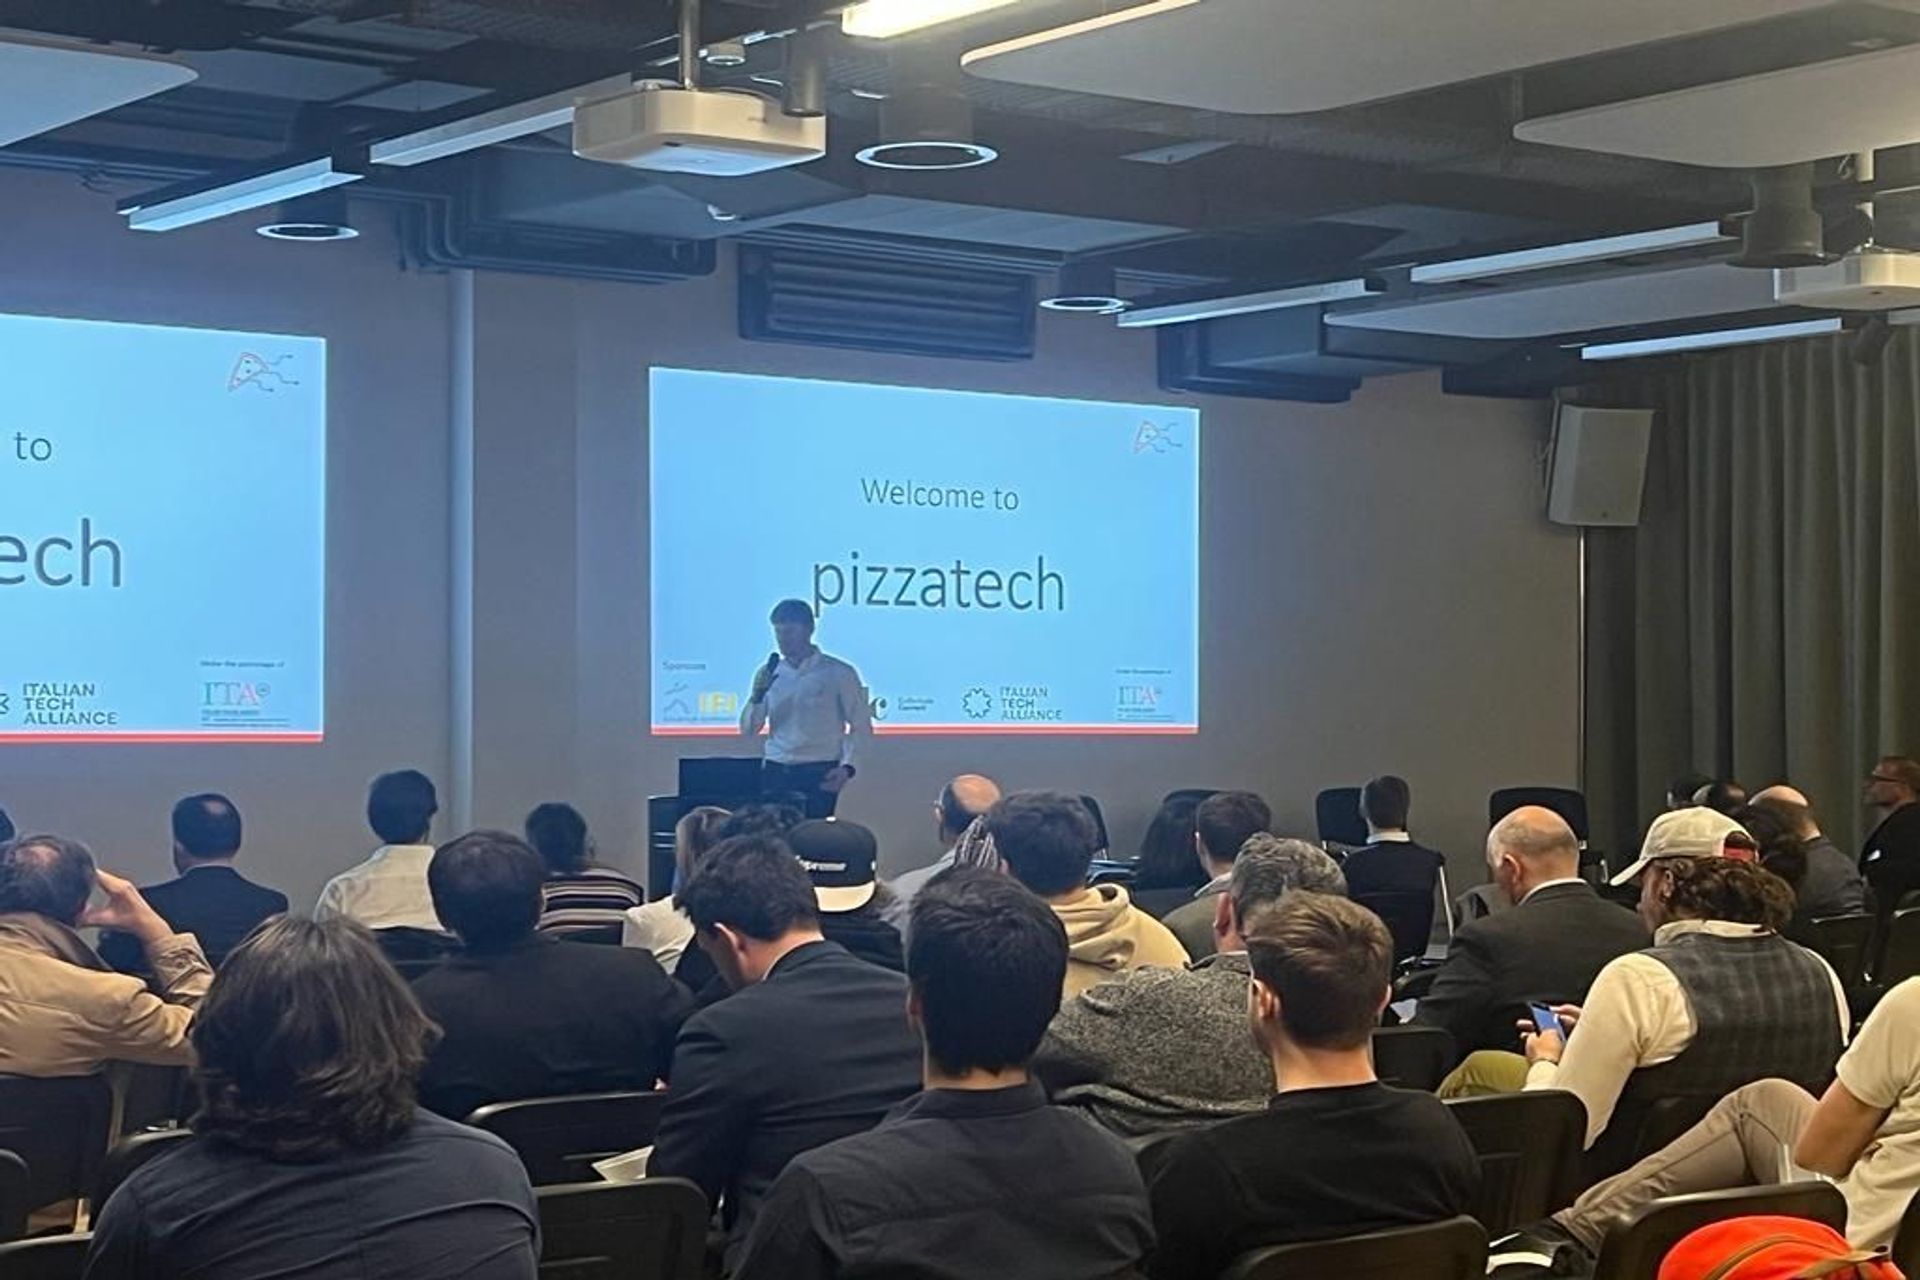 Den första upplagan av "Italian Tech Night", organiserad av #pizzatech-föreningen, ägde rum på kvällen den 24 mars 2022 på Startup Space av IFJ i Schlieren, nära Zürich: introduktionsanförandet av arrangören Gianmaria Sbetta